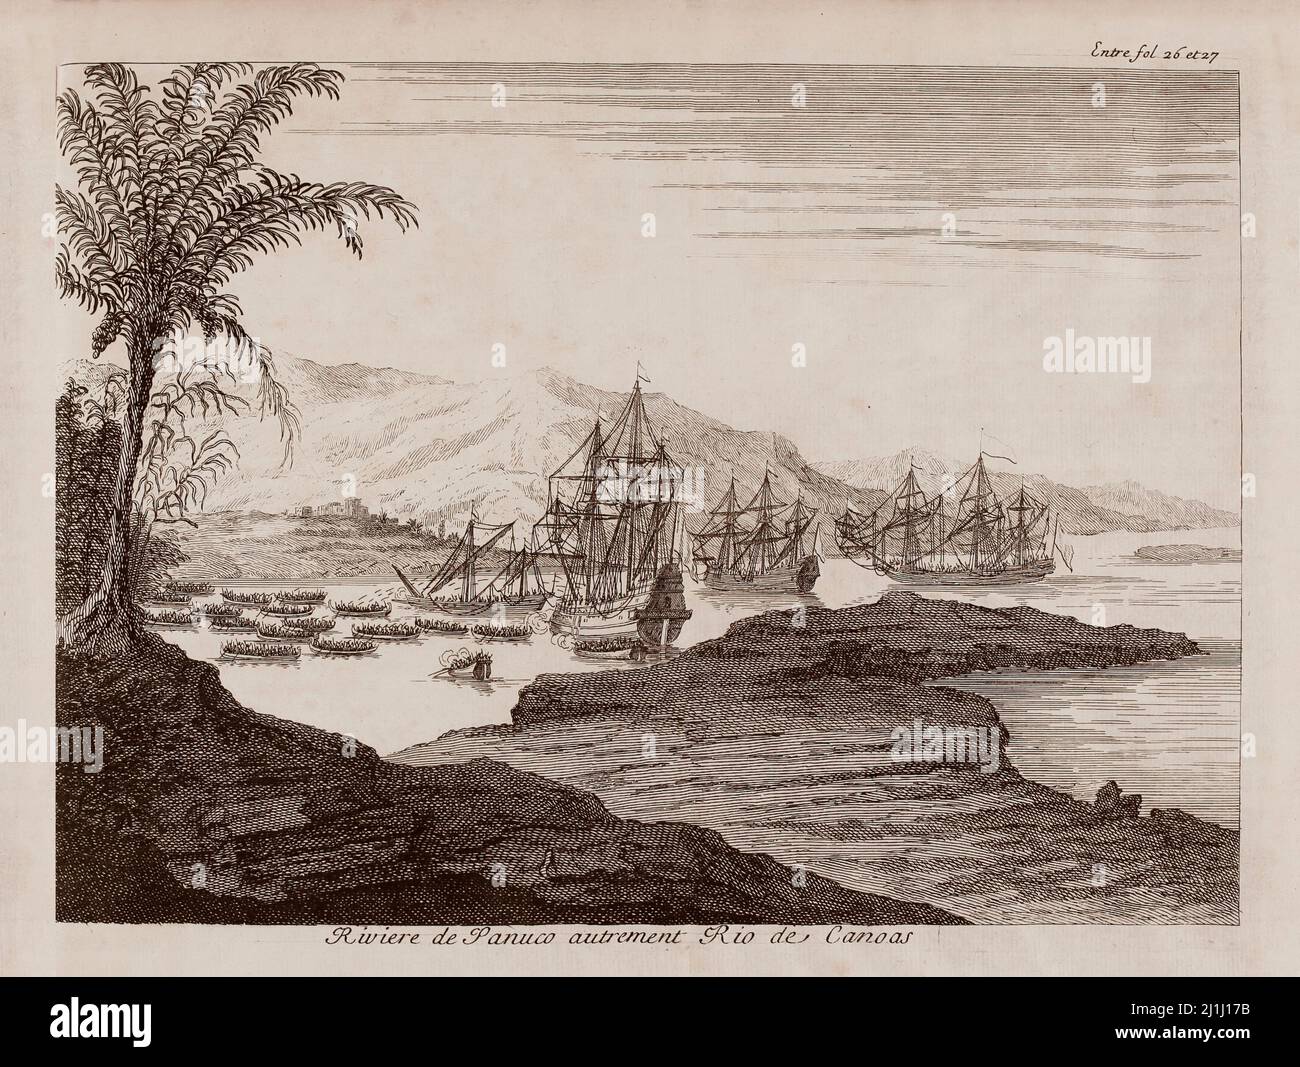 Stich aus dem 17.. Jahrhundert des Flusses Pánuco, Rio de Canoas. Von Antonio de Solis (1610-1686). Aus der Geschichte der Eroberung Mexikos oder des Neuen Spaniens. 1691 Stockfoto